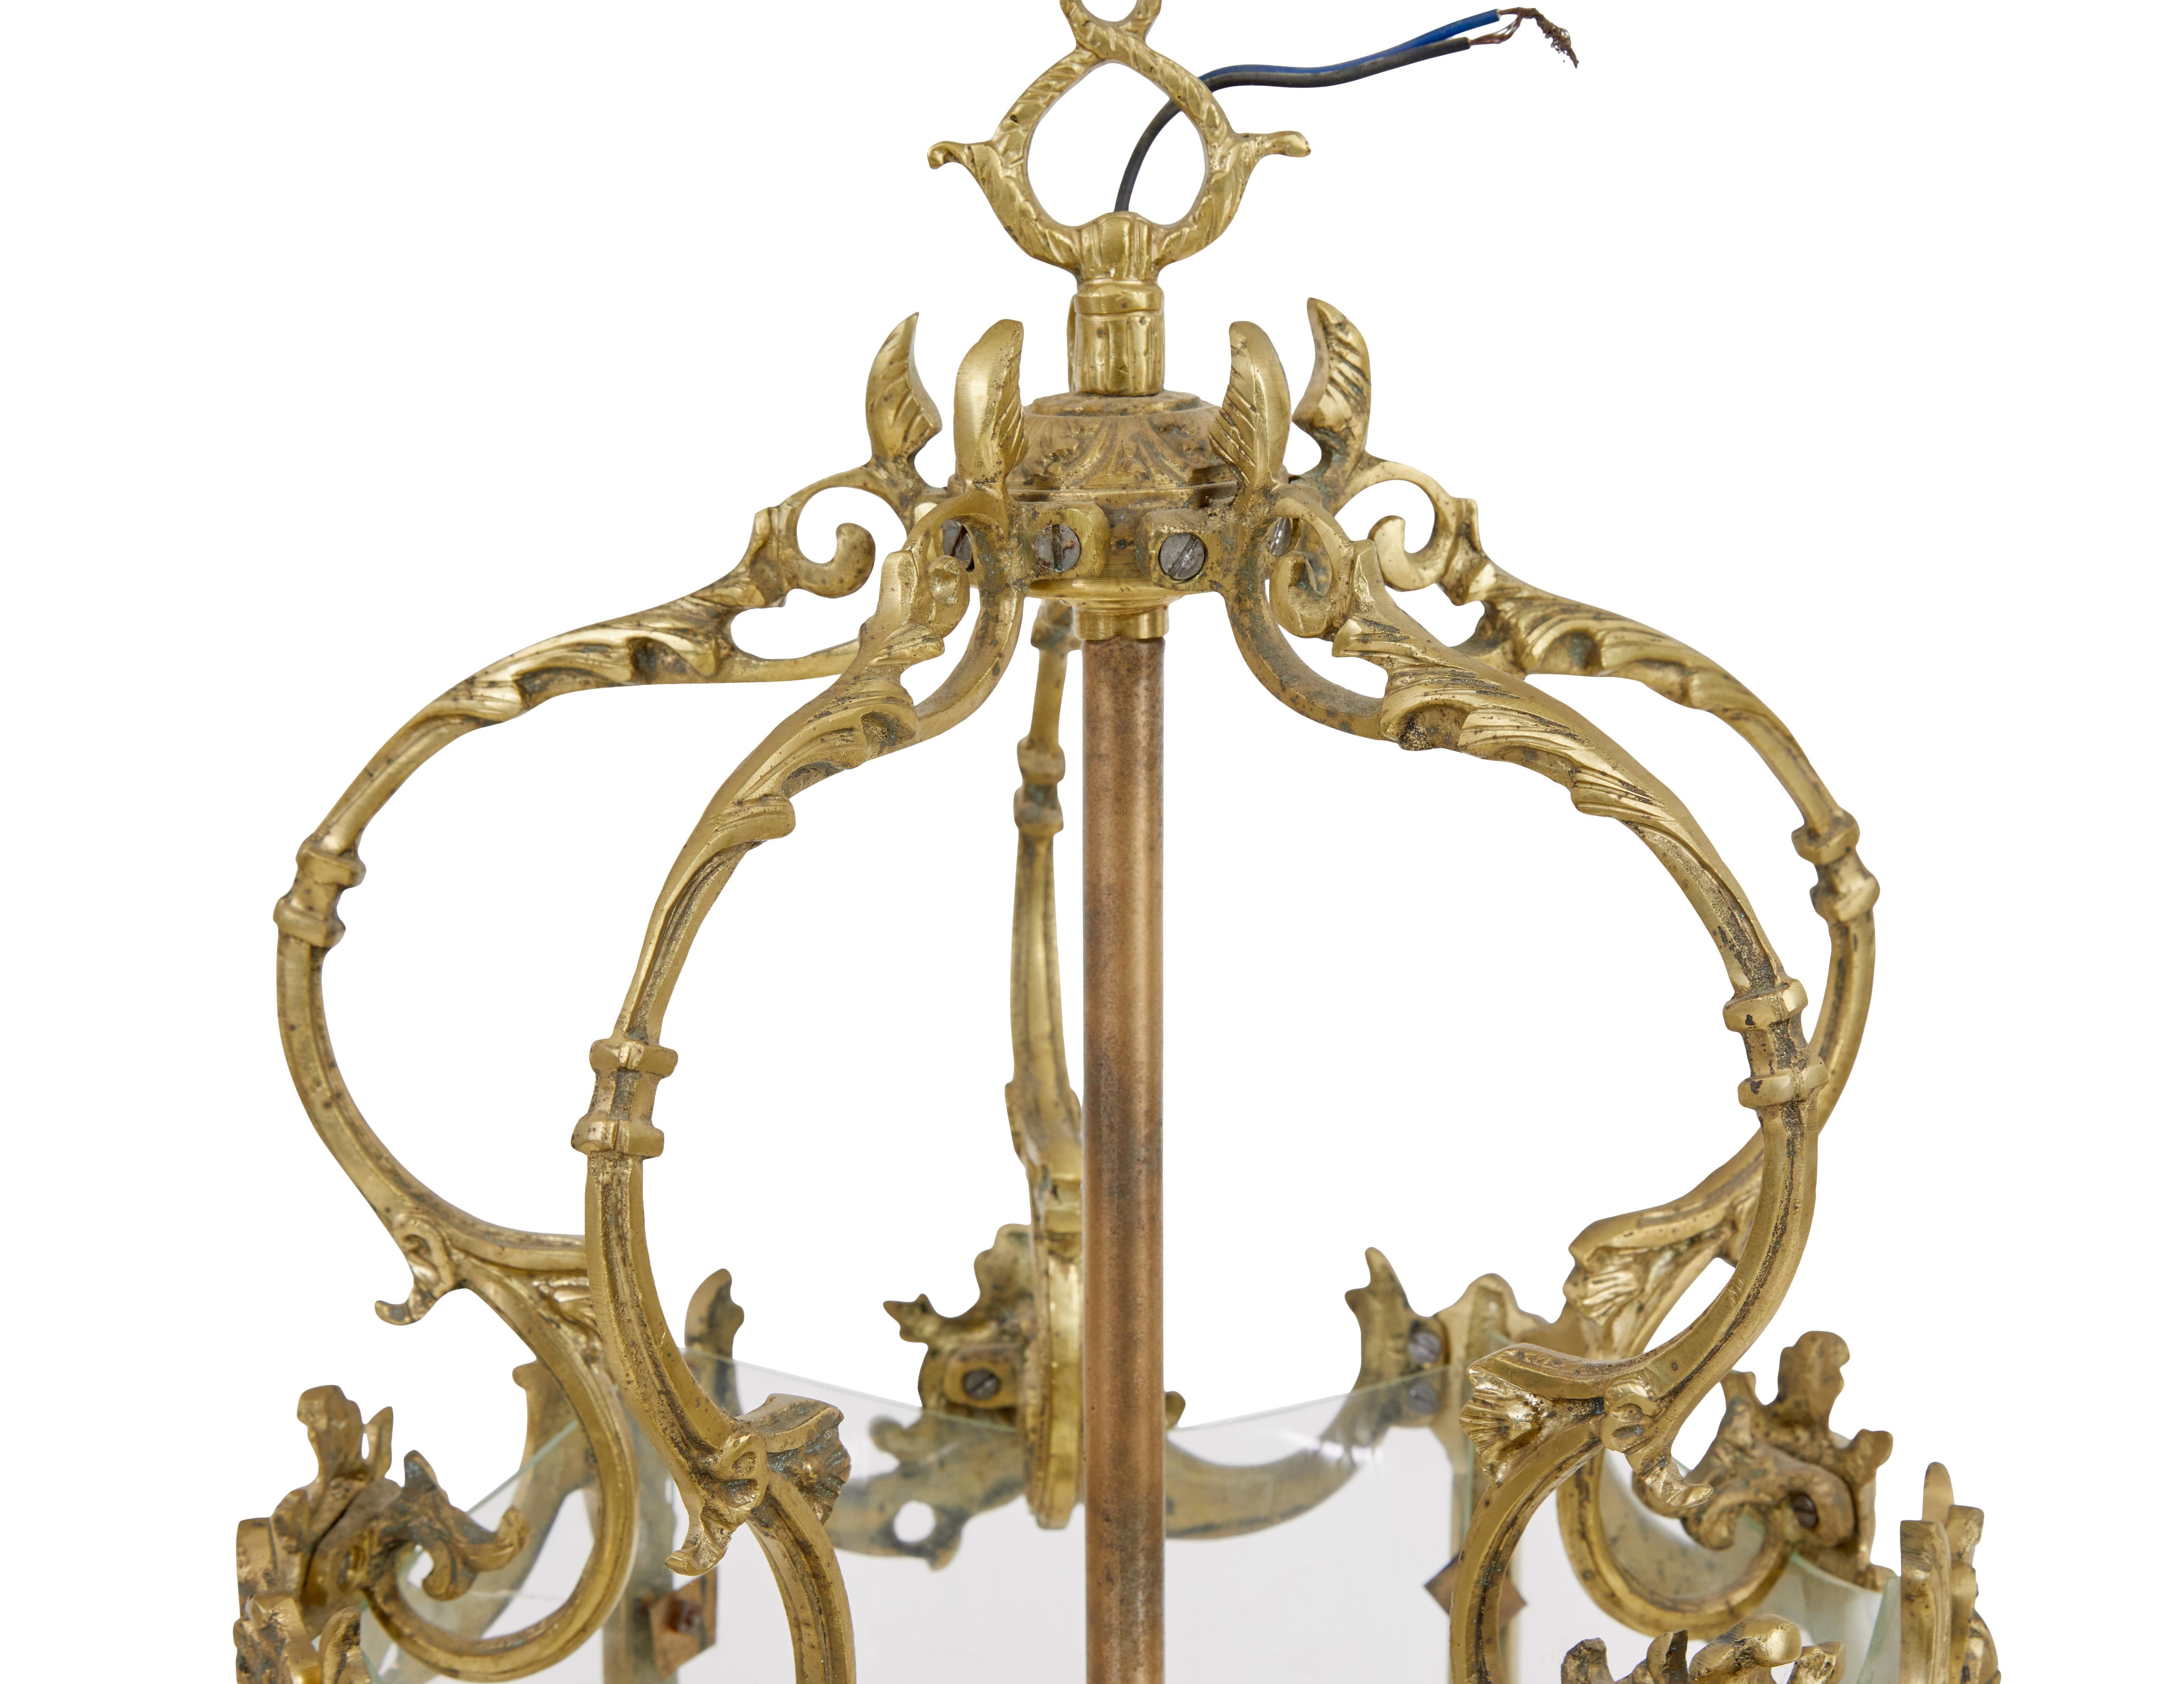 Lanterne française en bronze doré du début du 20e siècle, vers 1910.

Verre gravé original entouré d'un cadre en bronze doré décoratif.  Taille et forme idéales pour le couloir ou l'entrée.

Cette lanterne est câblée mais n'a pas été testée. Nous